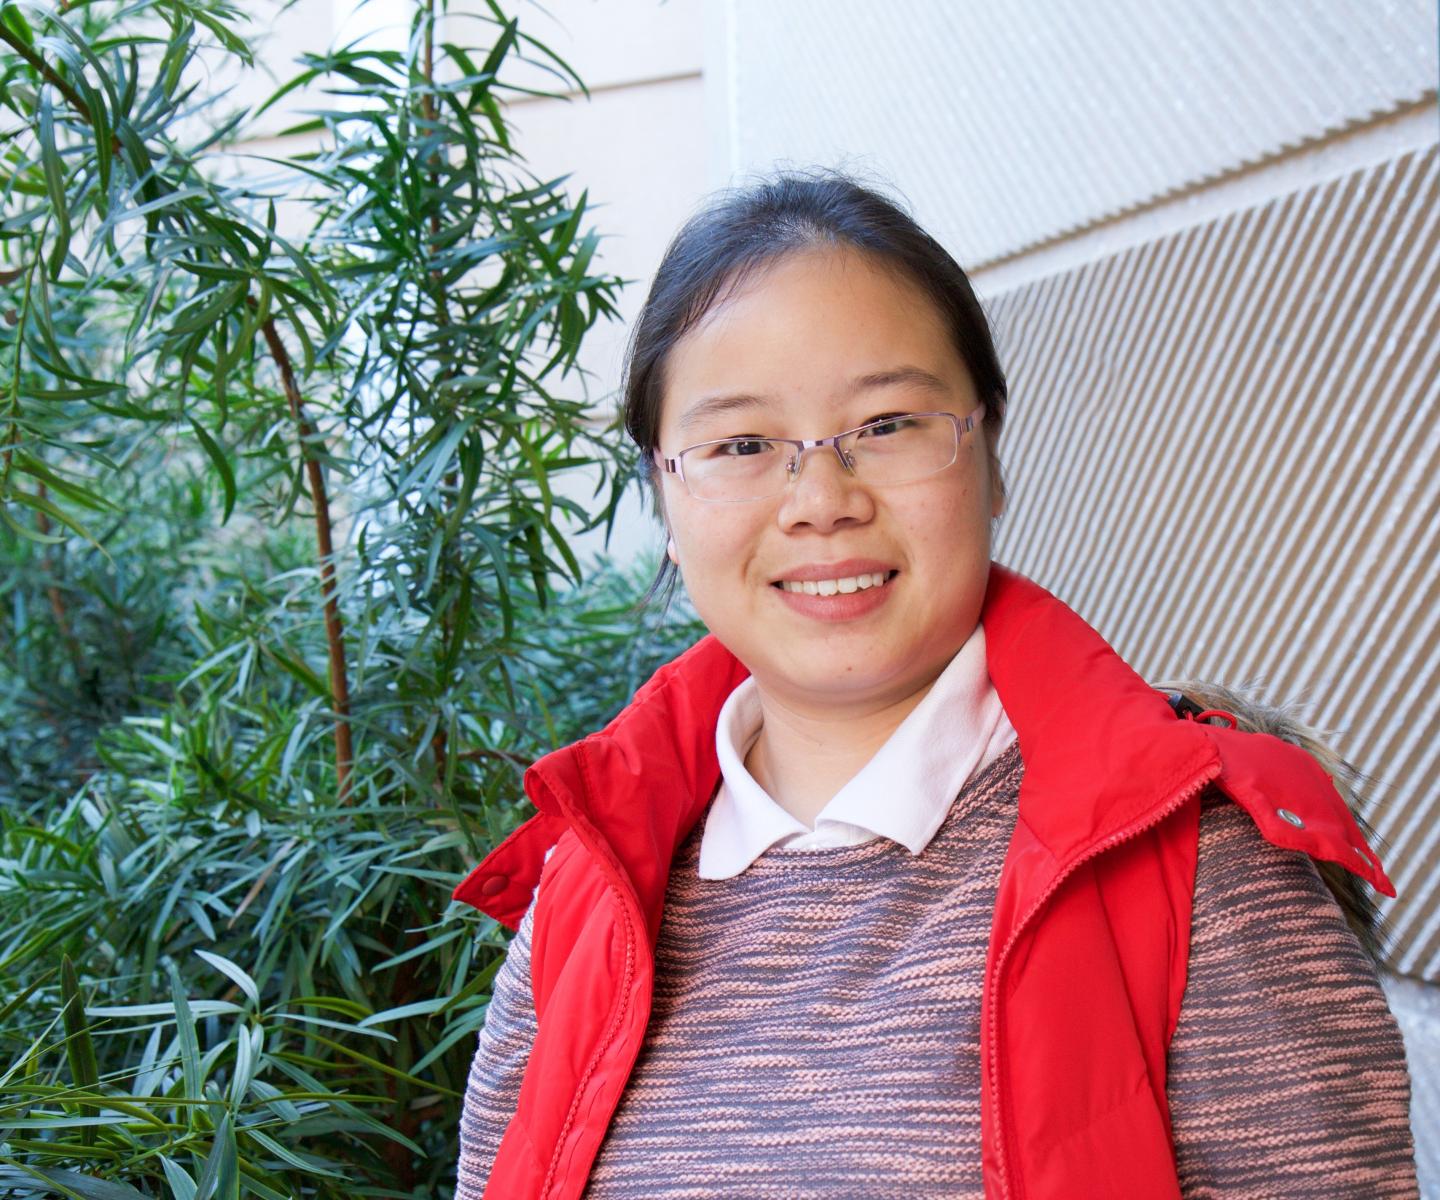 Joyce Cong Ying Wang, University of Texas at Dallas